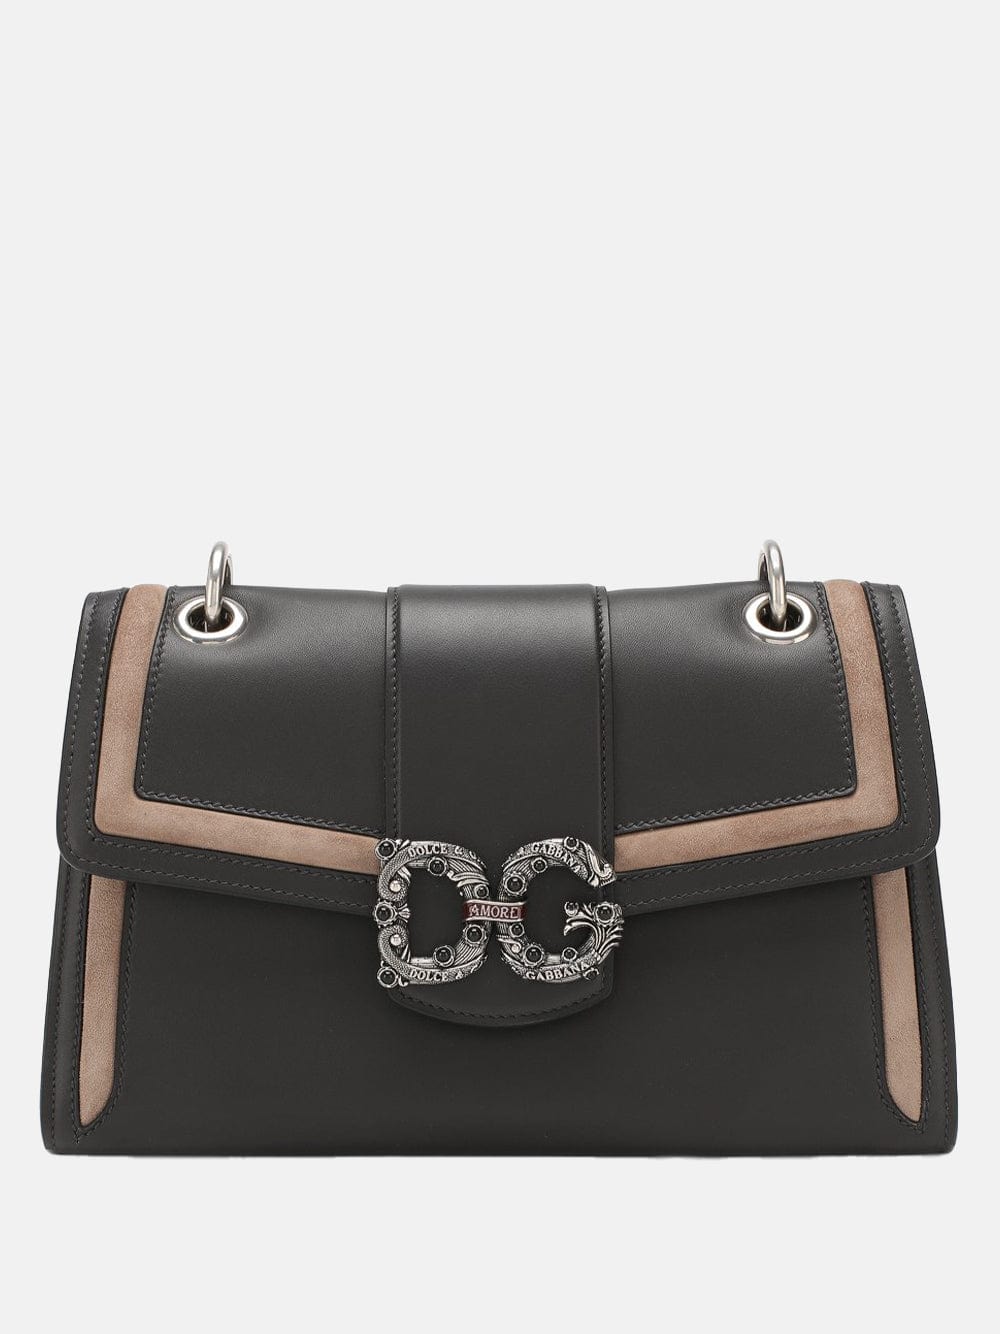 Dolce & Gabbana DG Amore Shoulder Bag